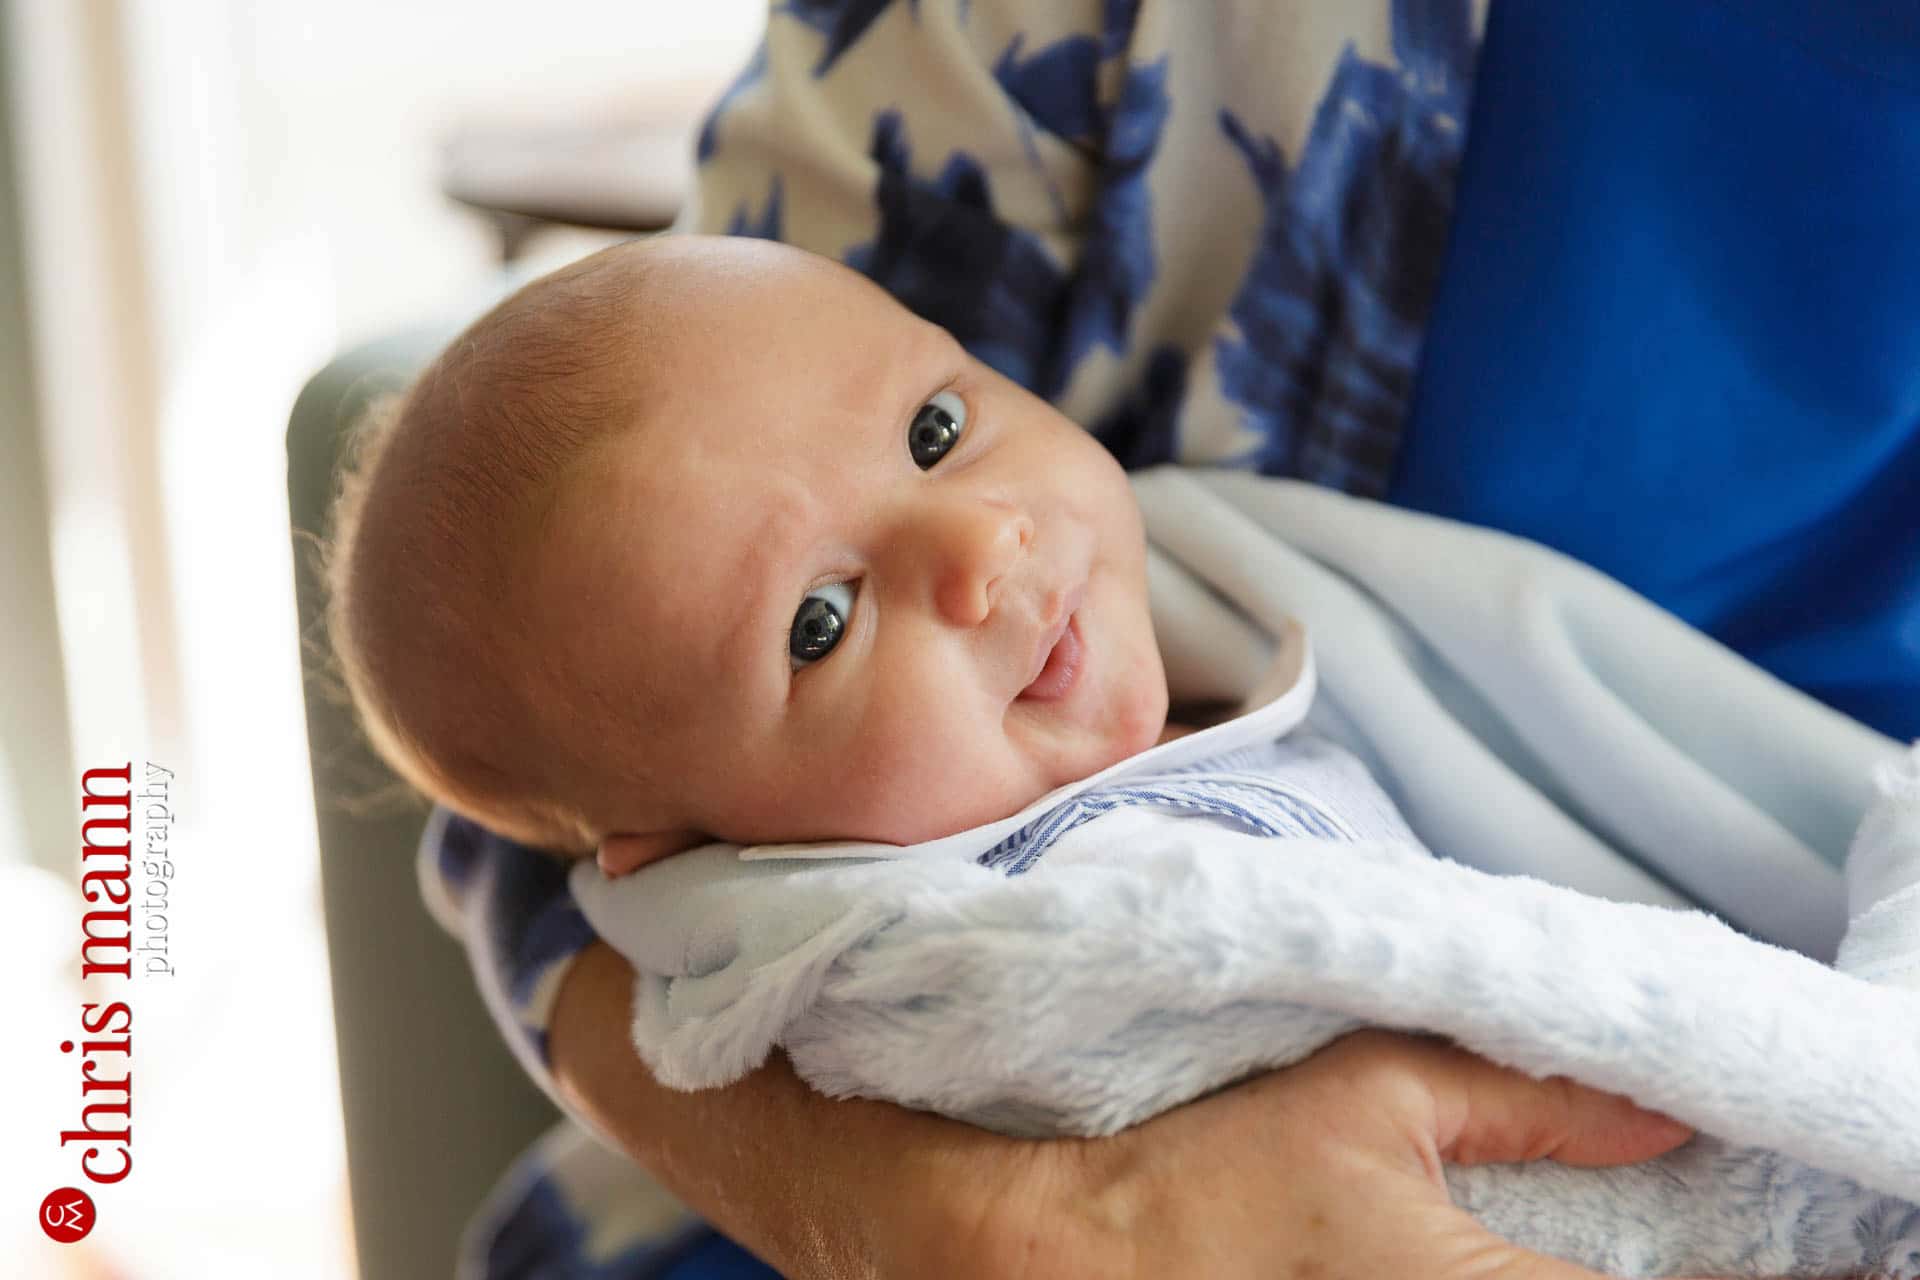 newborn baby portrait